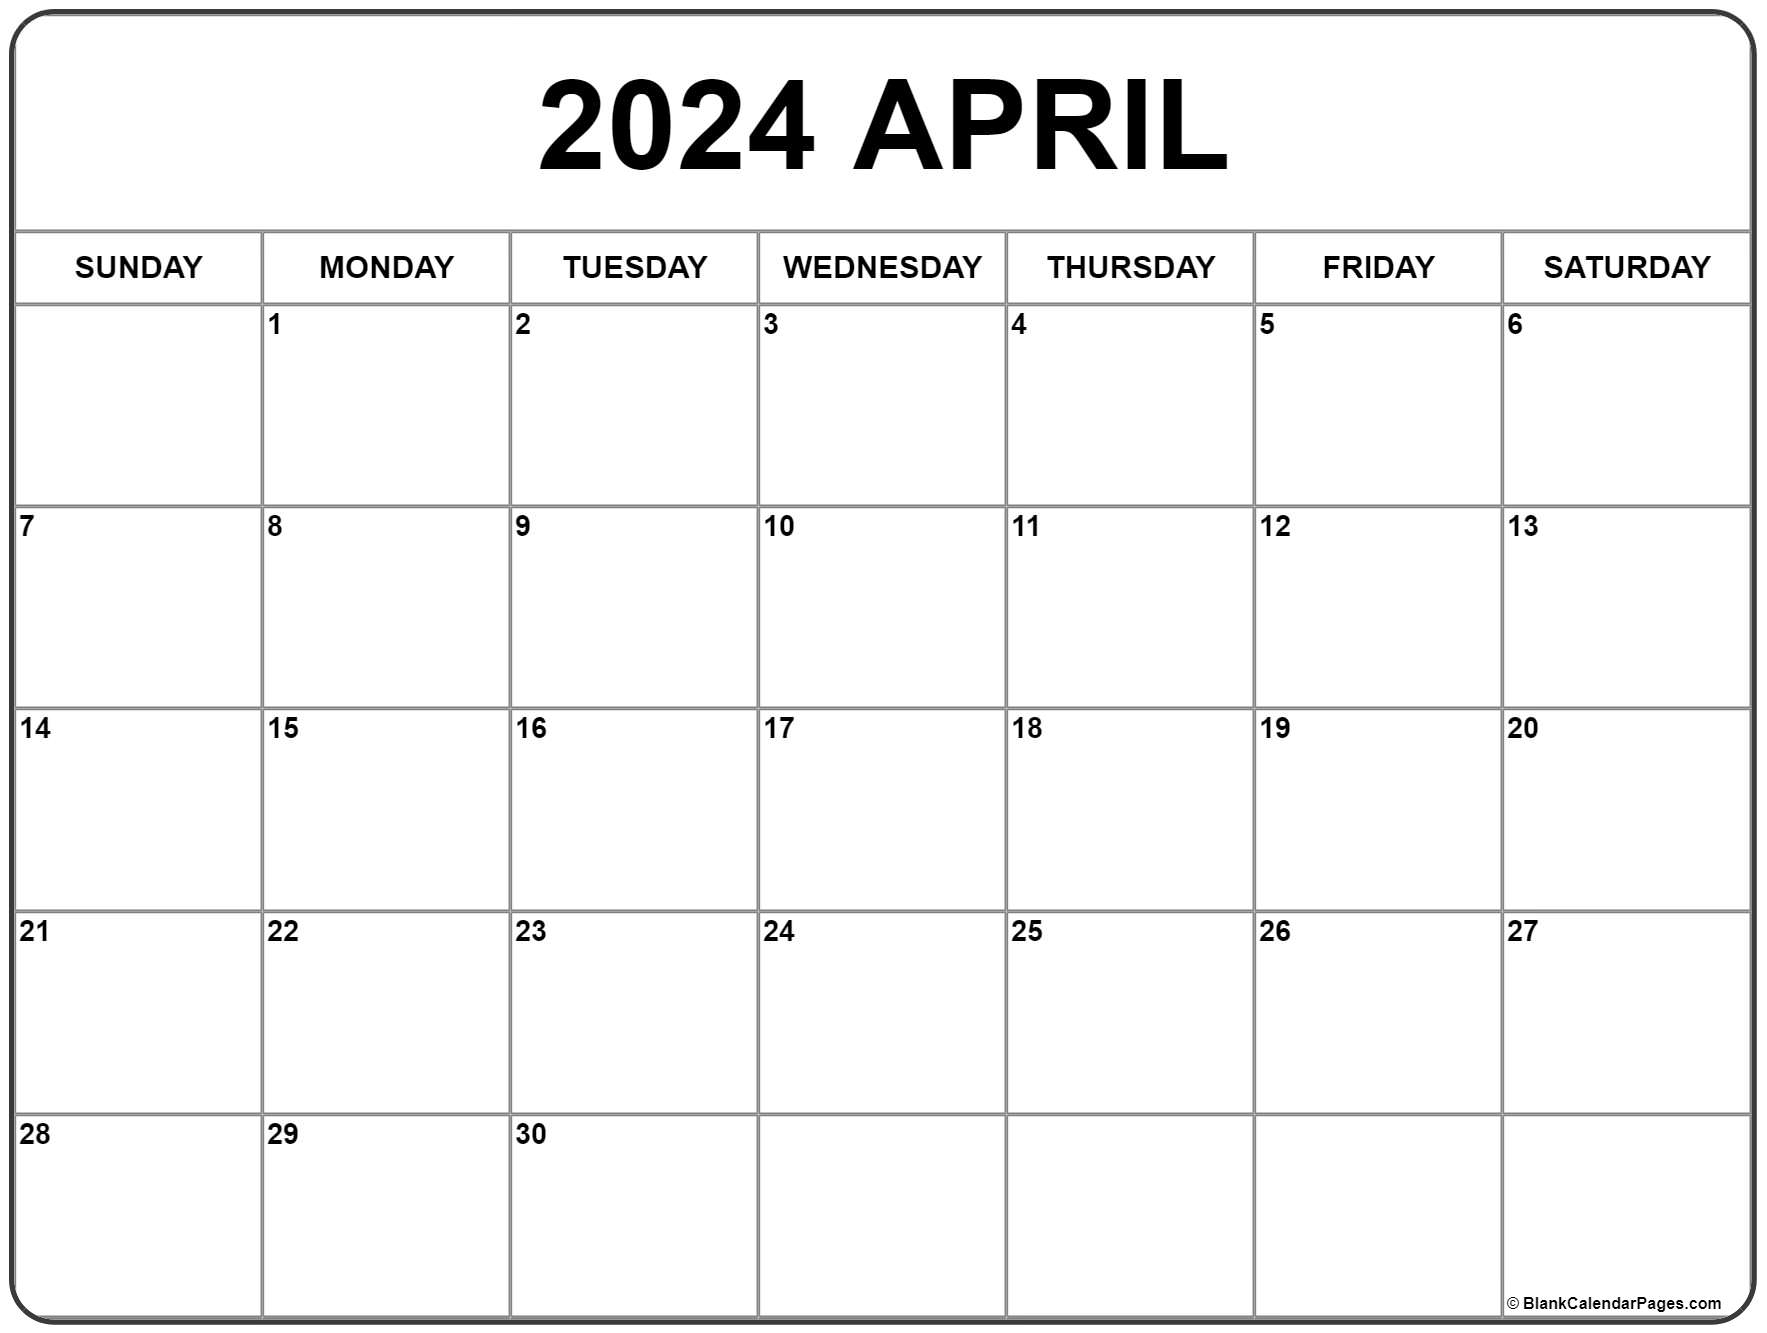 April 2024 Calendar | Free Printable Calendar for Free Printable Monthly Calendar April 2024